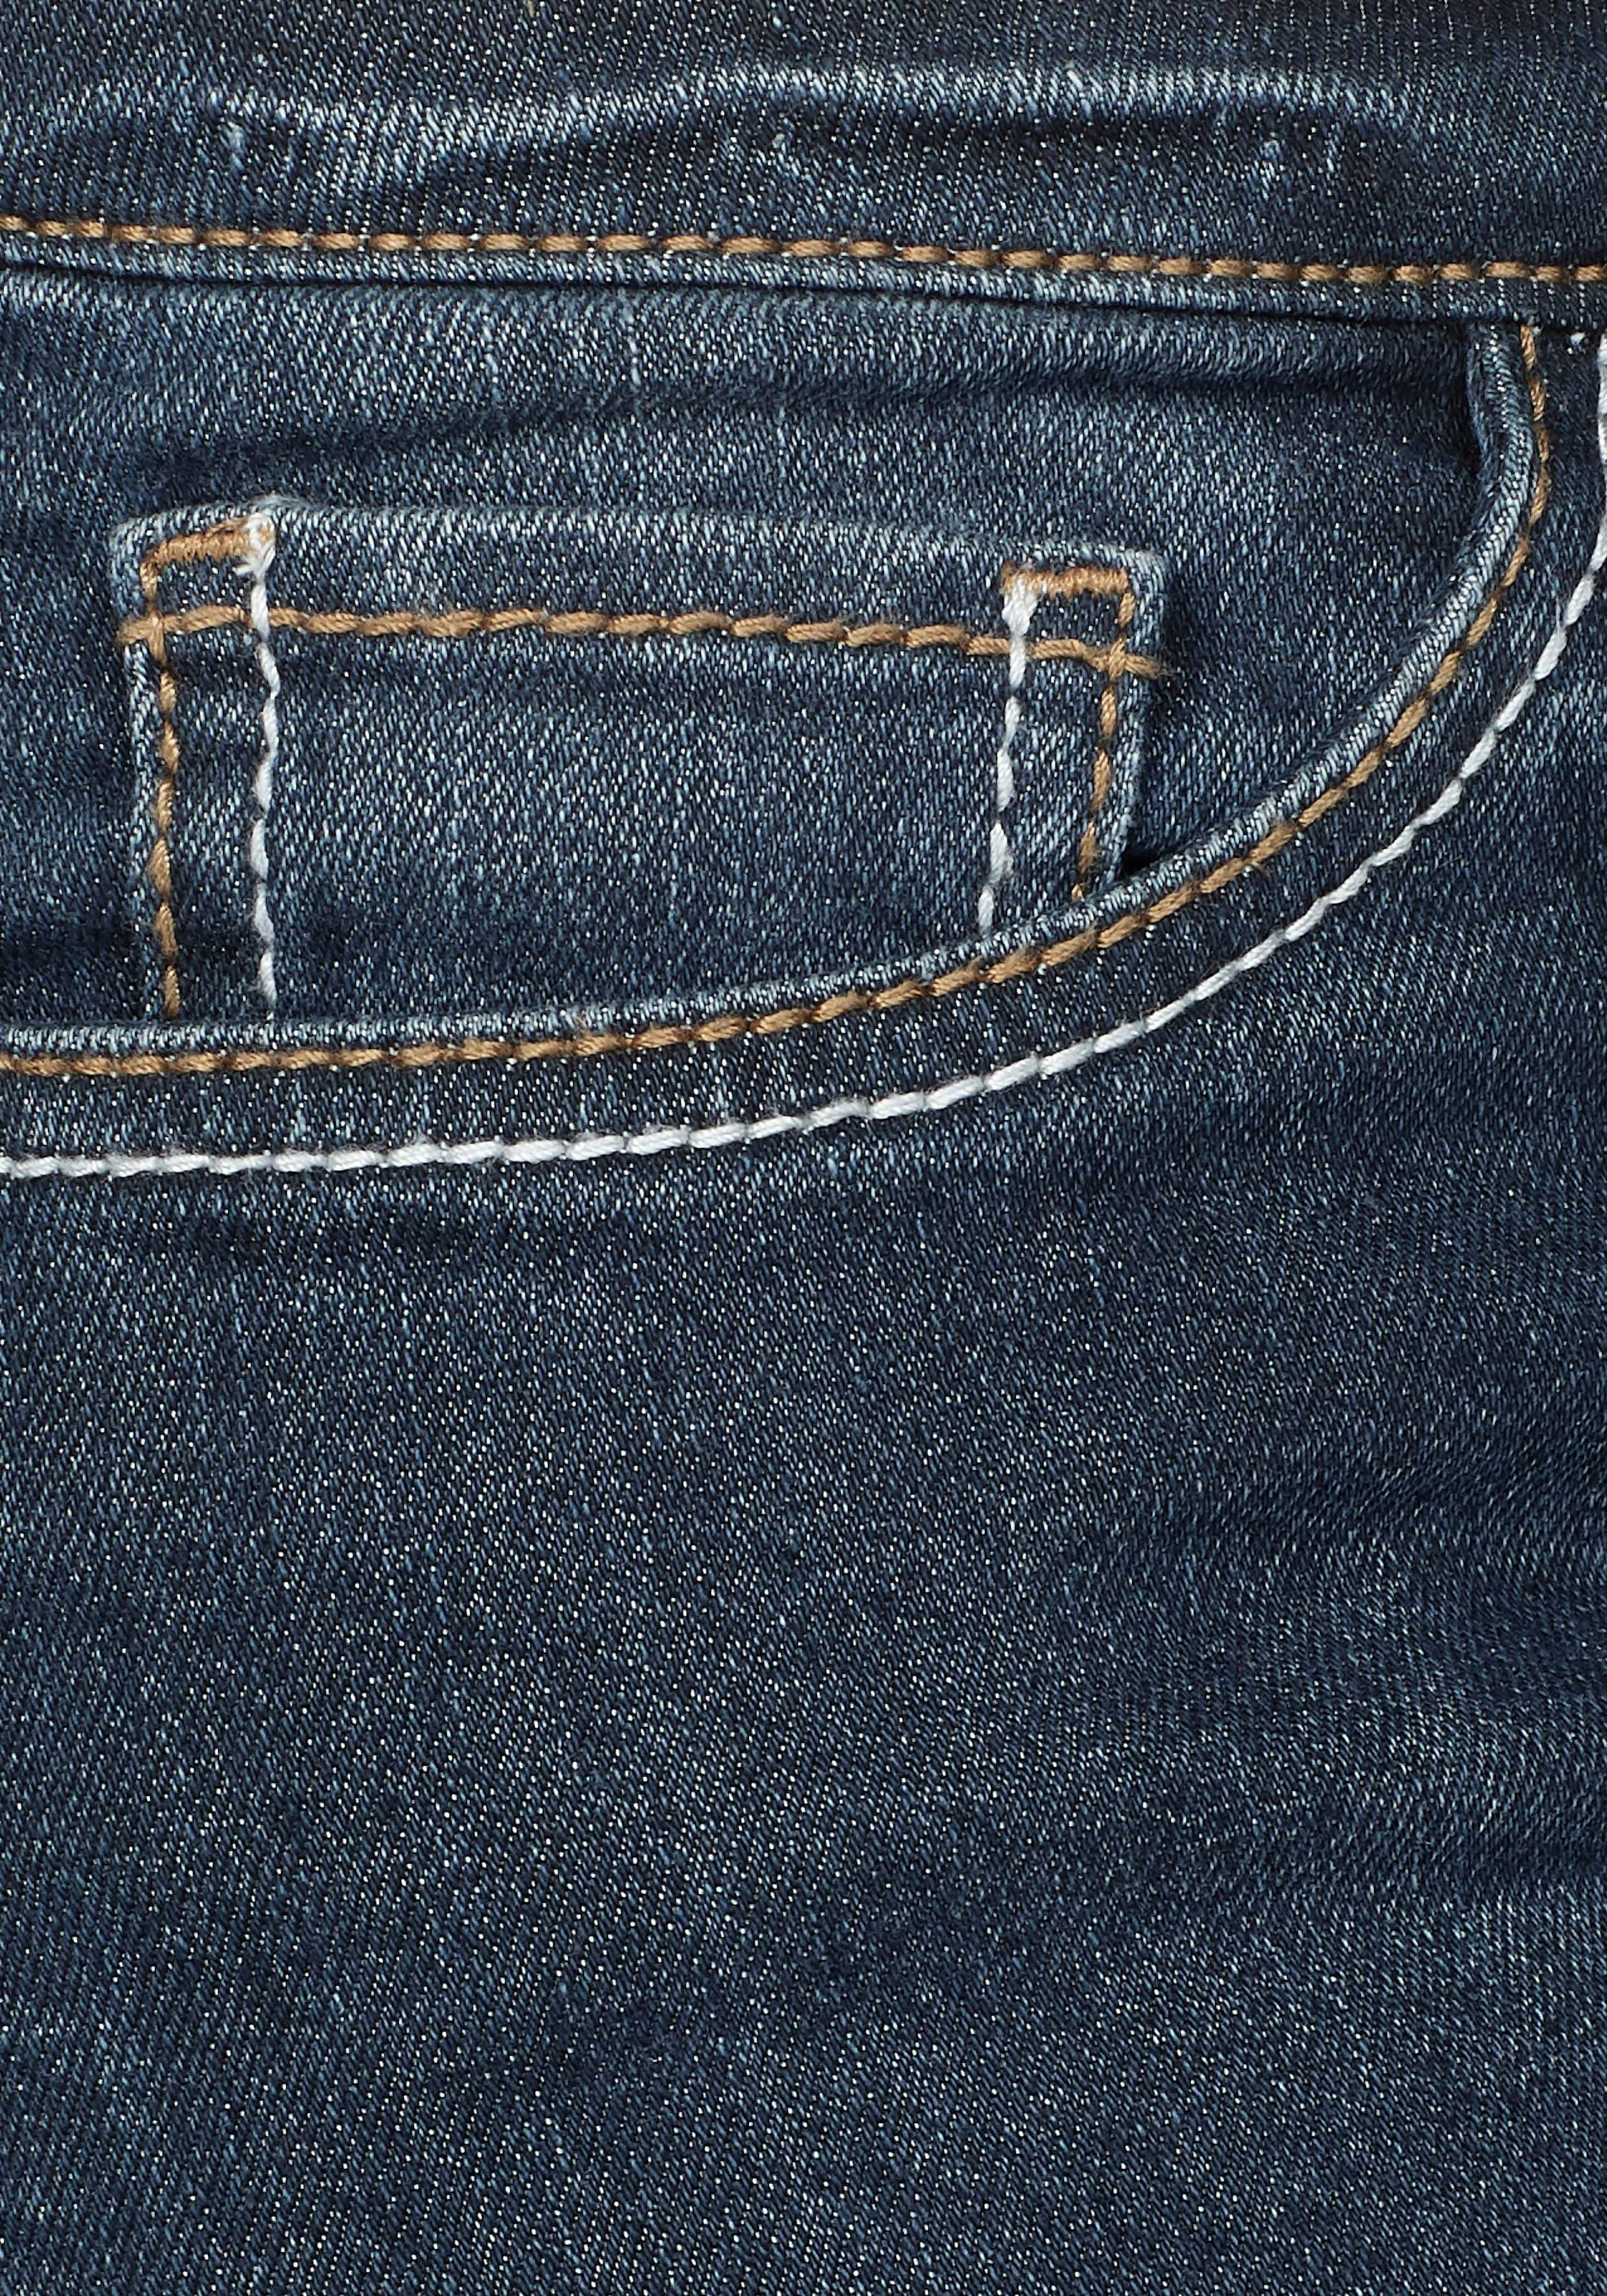 Arizona Bootcut-Jeans »mit Kontrastnähten«, Mid Waist